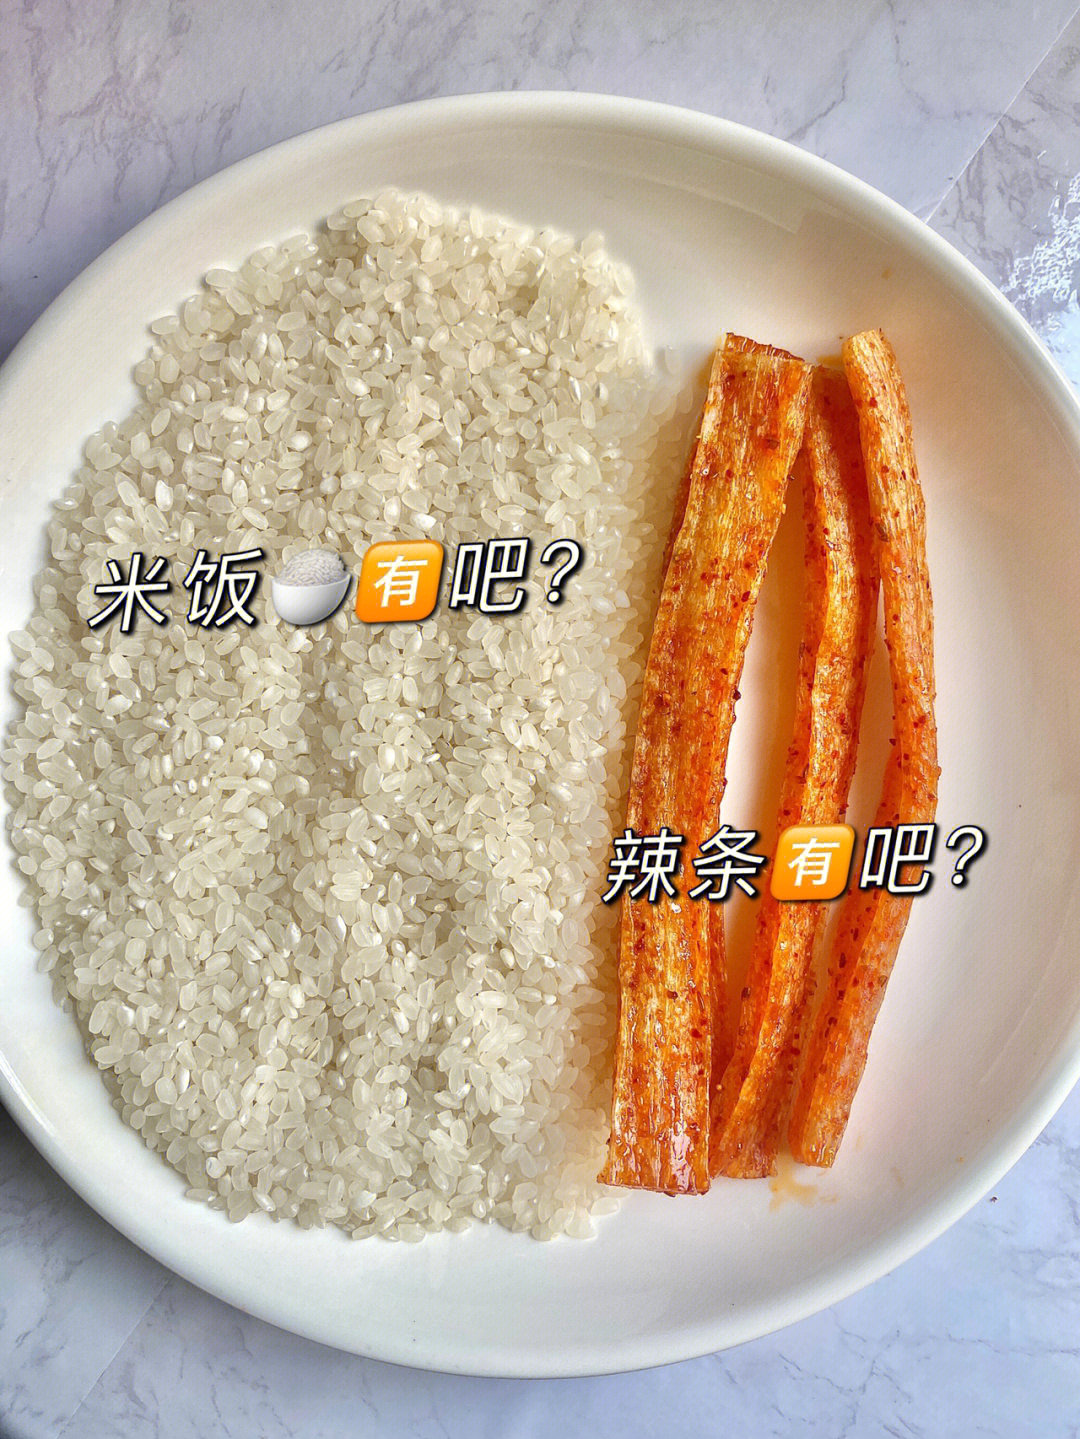 剩米饭自制辣条图片